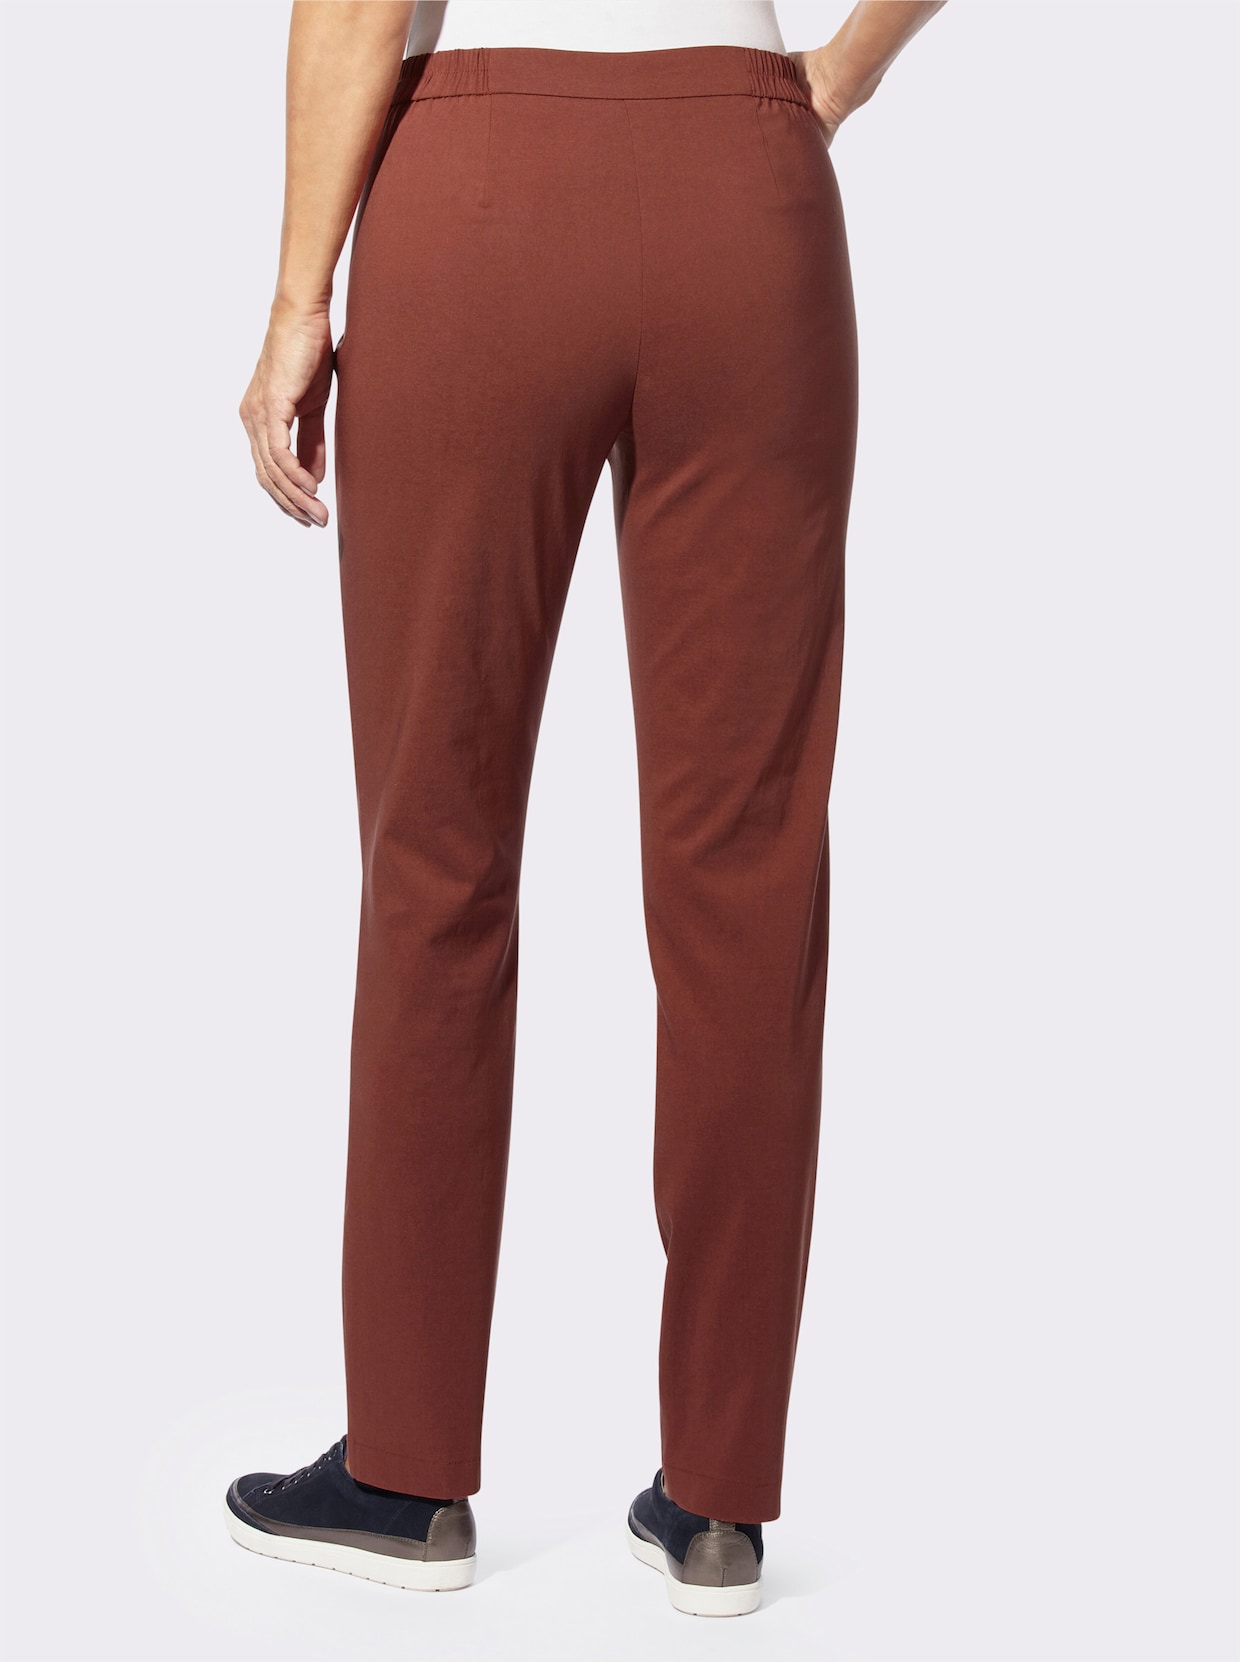 Bengalínové kalhoty - červenohnědá